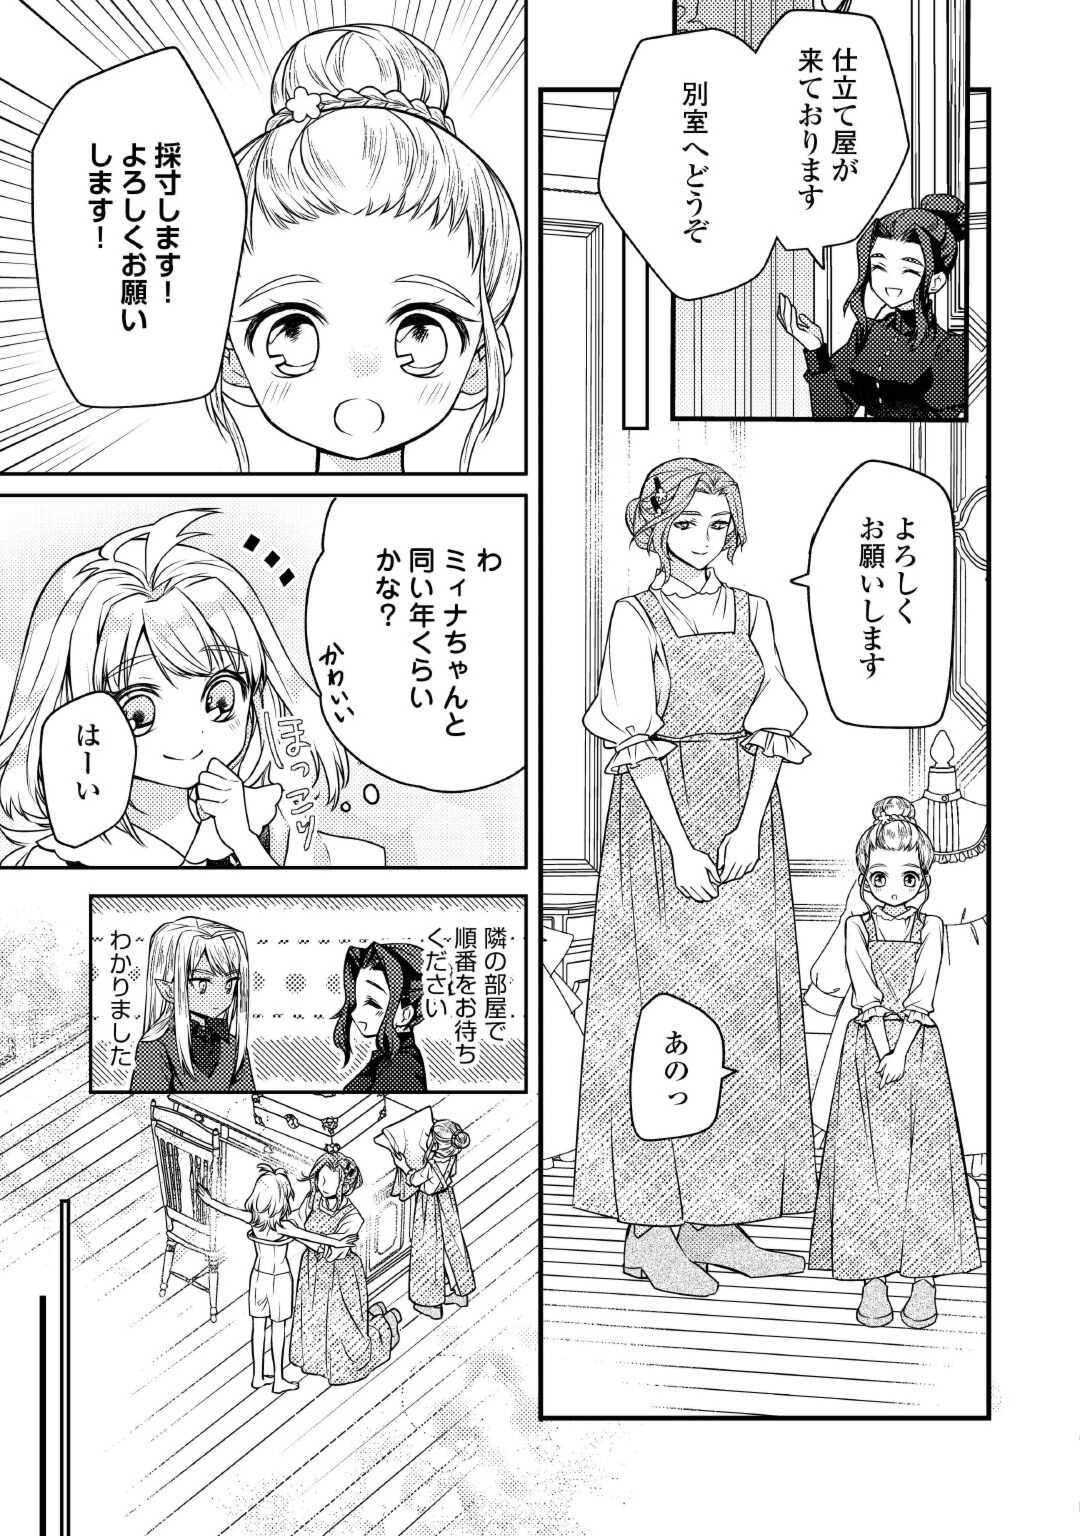 Toaru Chisana Mura No Chi Tona Tanya Ya San - Chapter 17 - Page 3